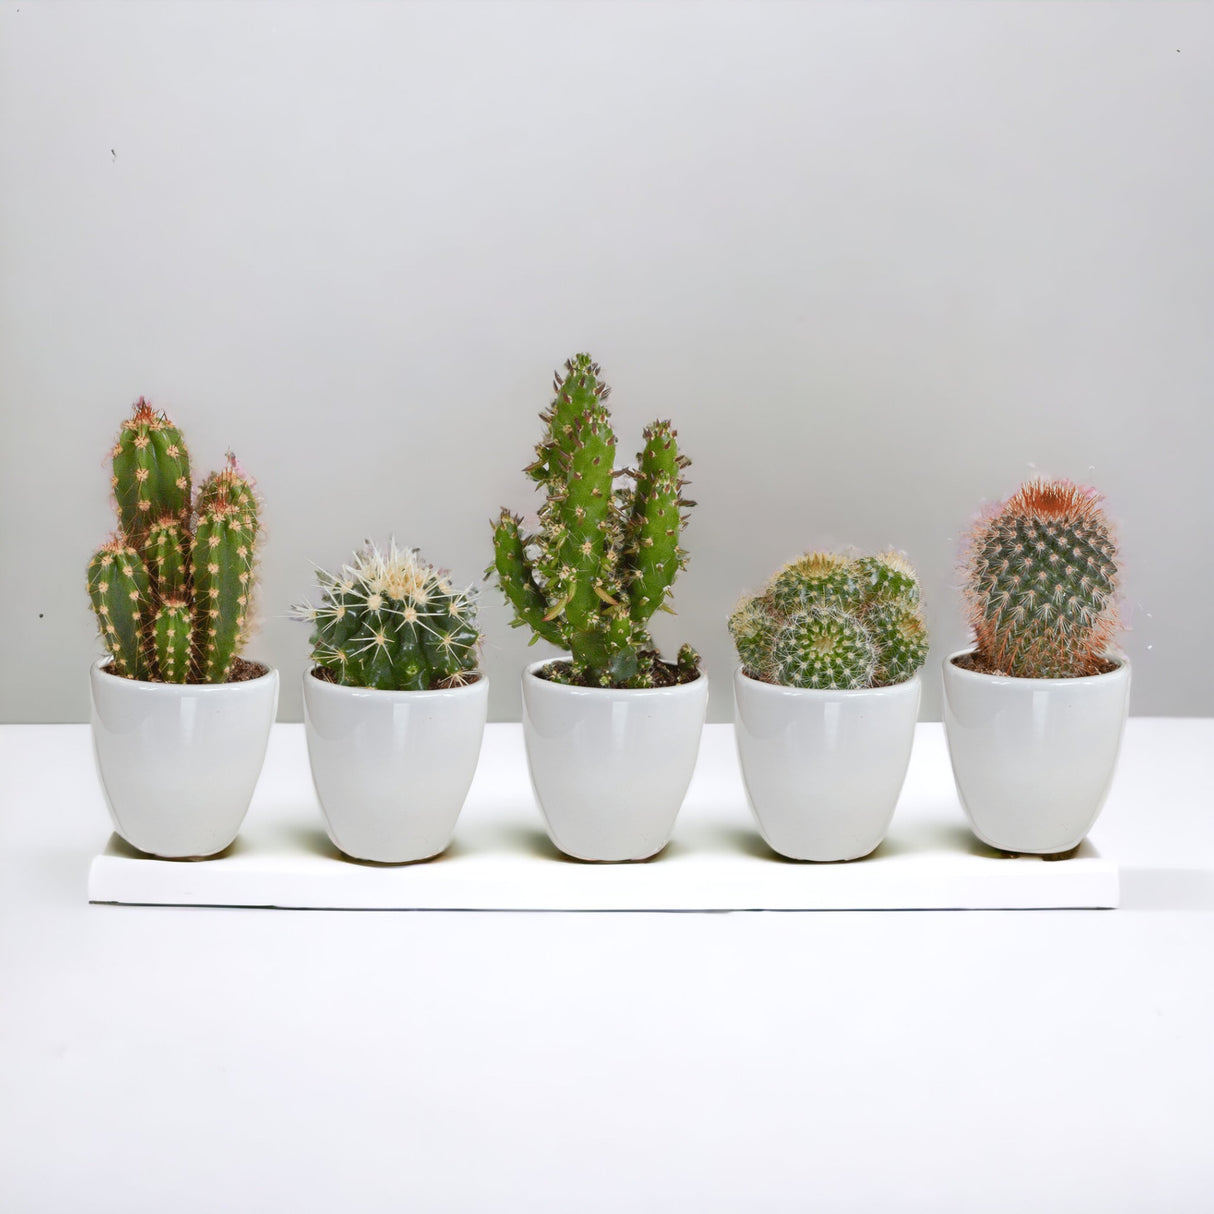 Caja de cactus y sus maceteros blancos - Lote de 15, h13cm